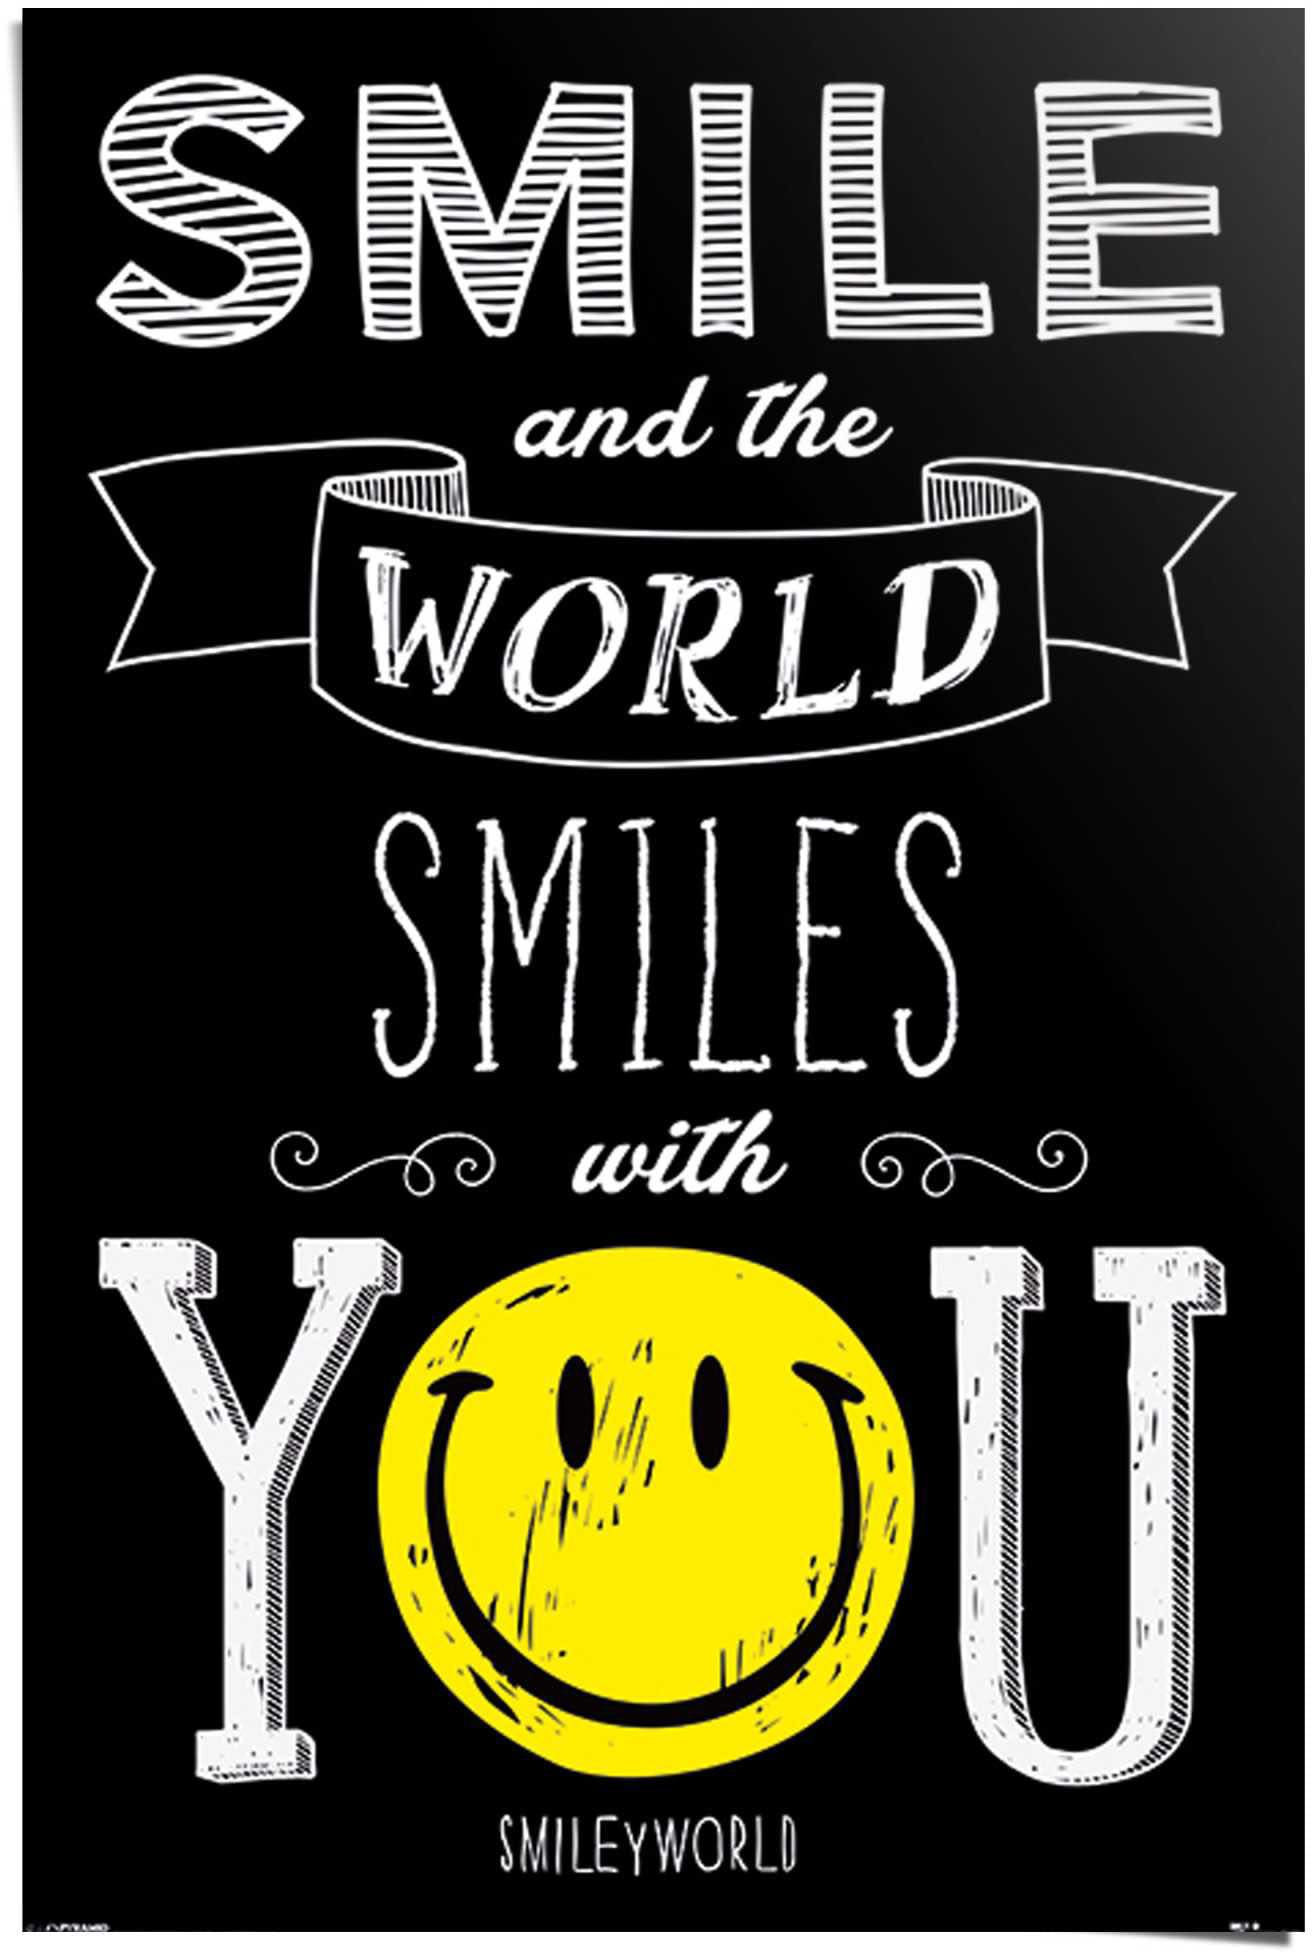 ♕ Reinders! Poster »Smiley (1 you«, auf world smiles with St.) versandkostenfrei